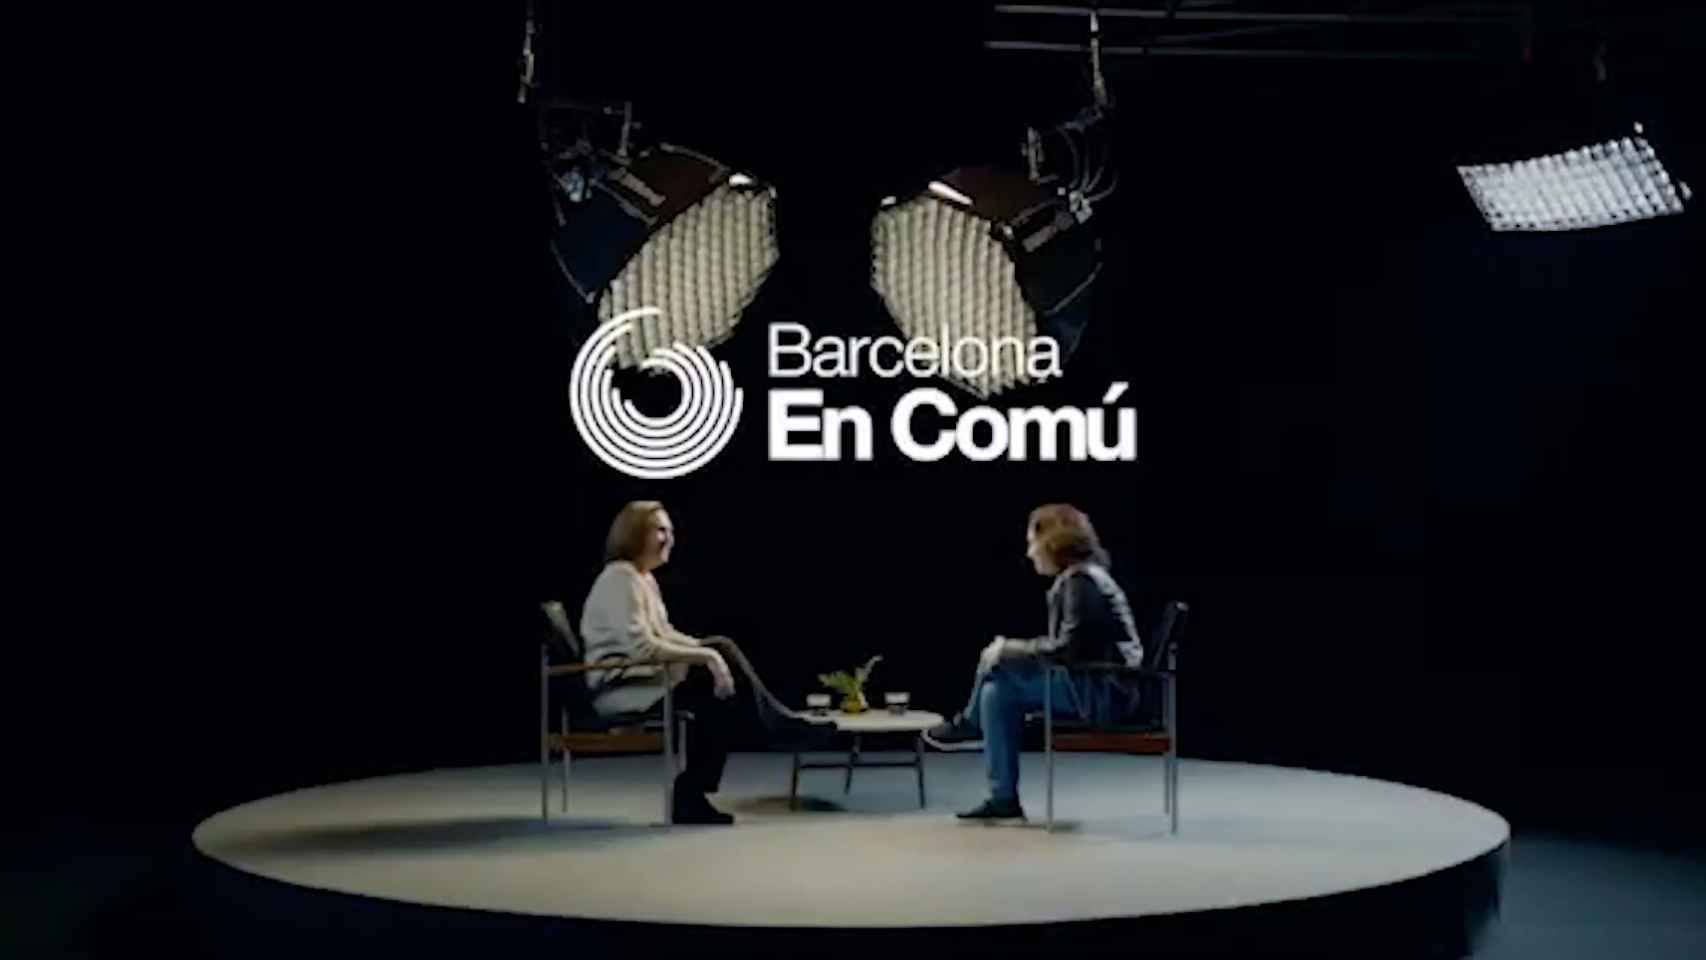 La alcaldesa de Barcelona, Ada Colau, en la autoentrevista / CG